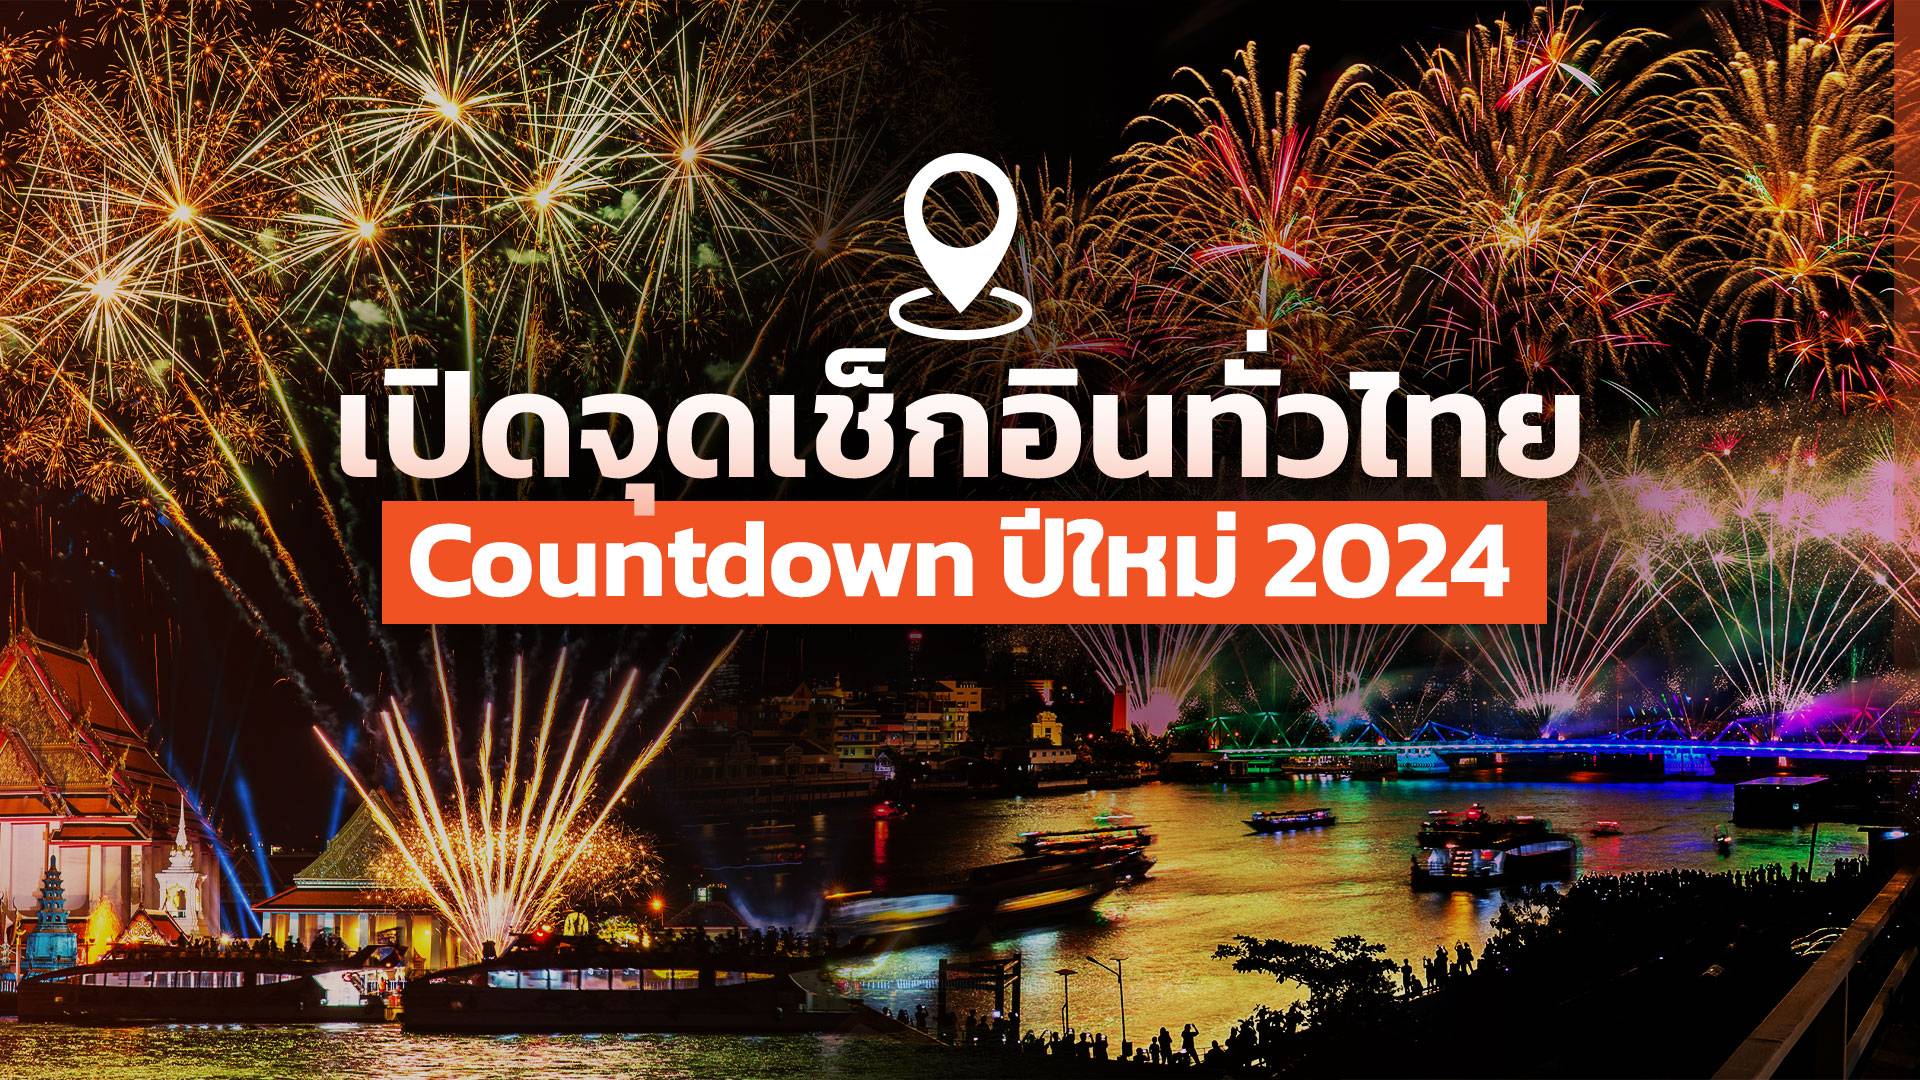 เปิดจุดงานเคาท์ดาวน์ ดูพลุปีใหม่ 2567 เช็กอินได้ทั่วไทย 